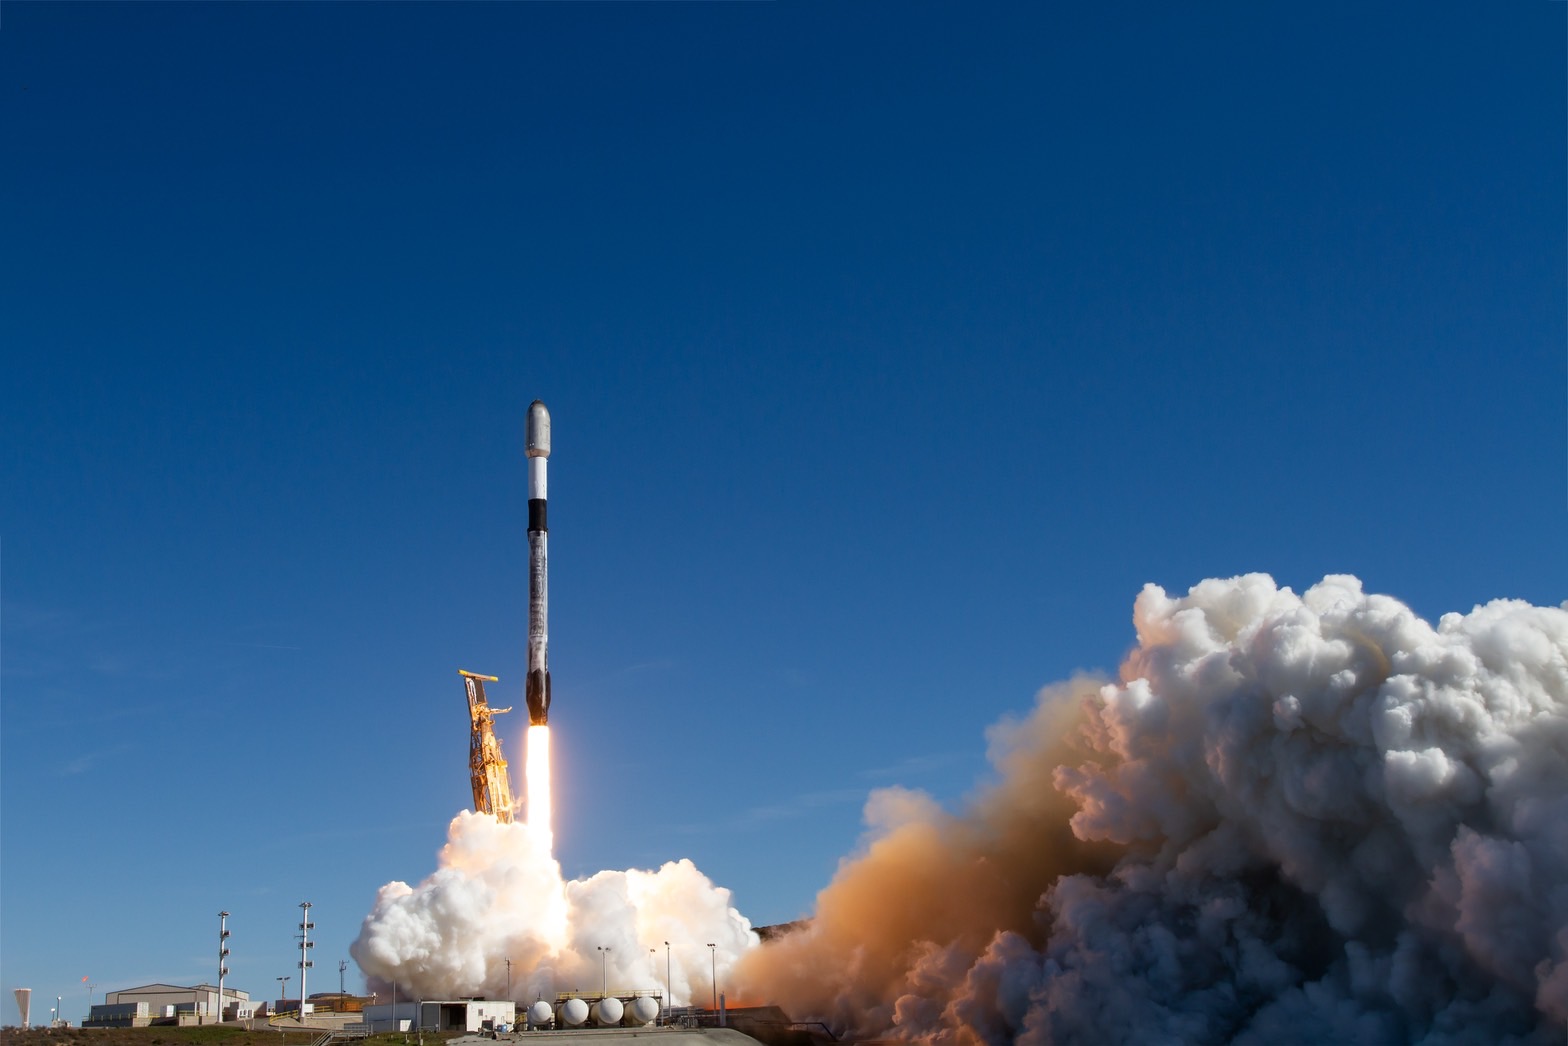 中央大學與鴻海科技集團共同研製的立方衛星「珍珠號」11月12日凌晨於美國搭載SpaceX獵鷹9號，順利發射成功。照片SpaceX提供